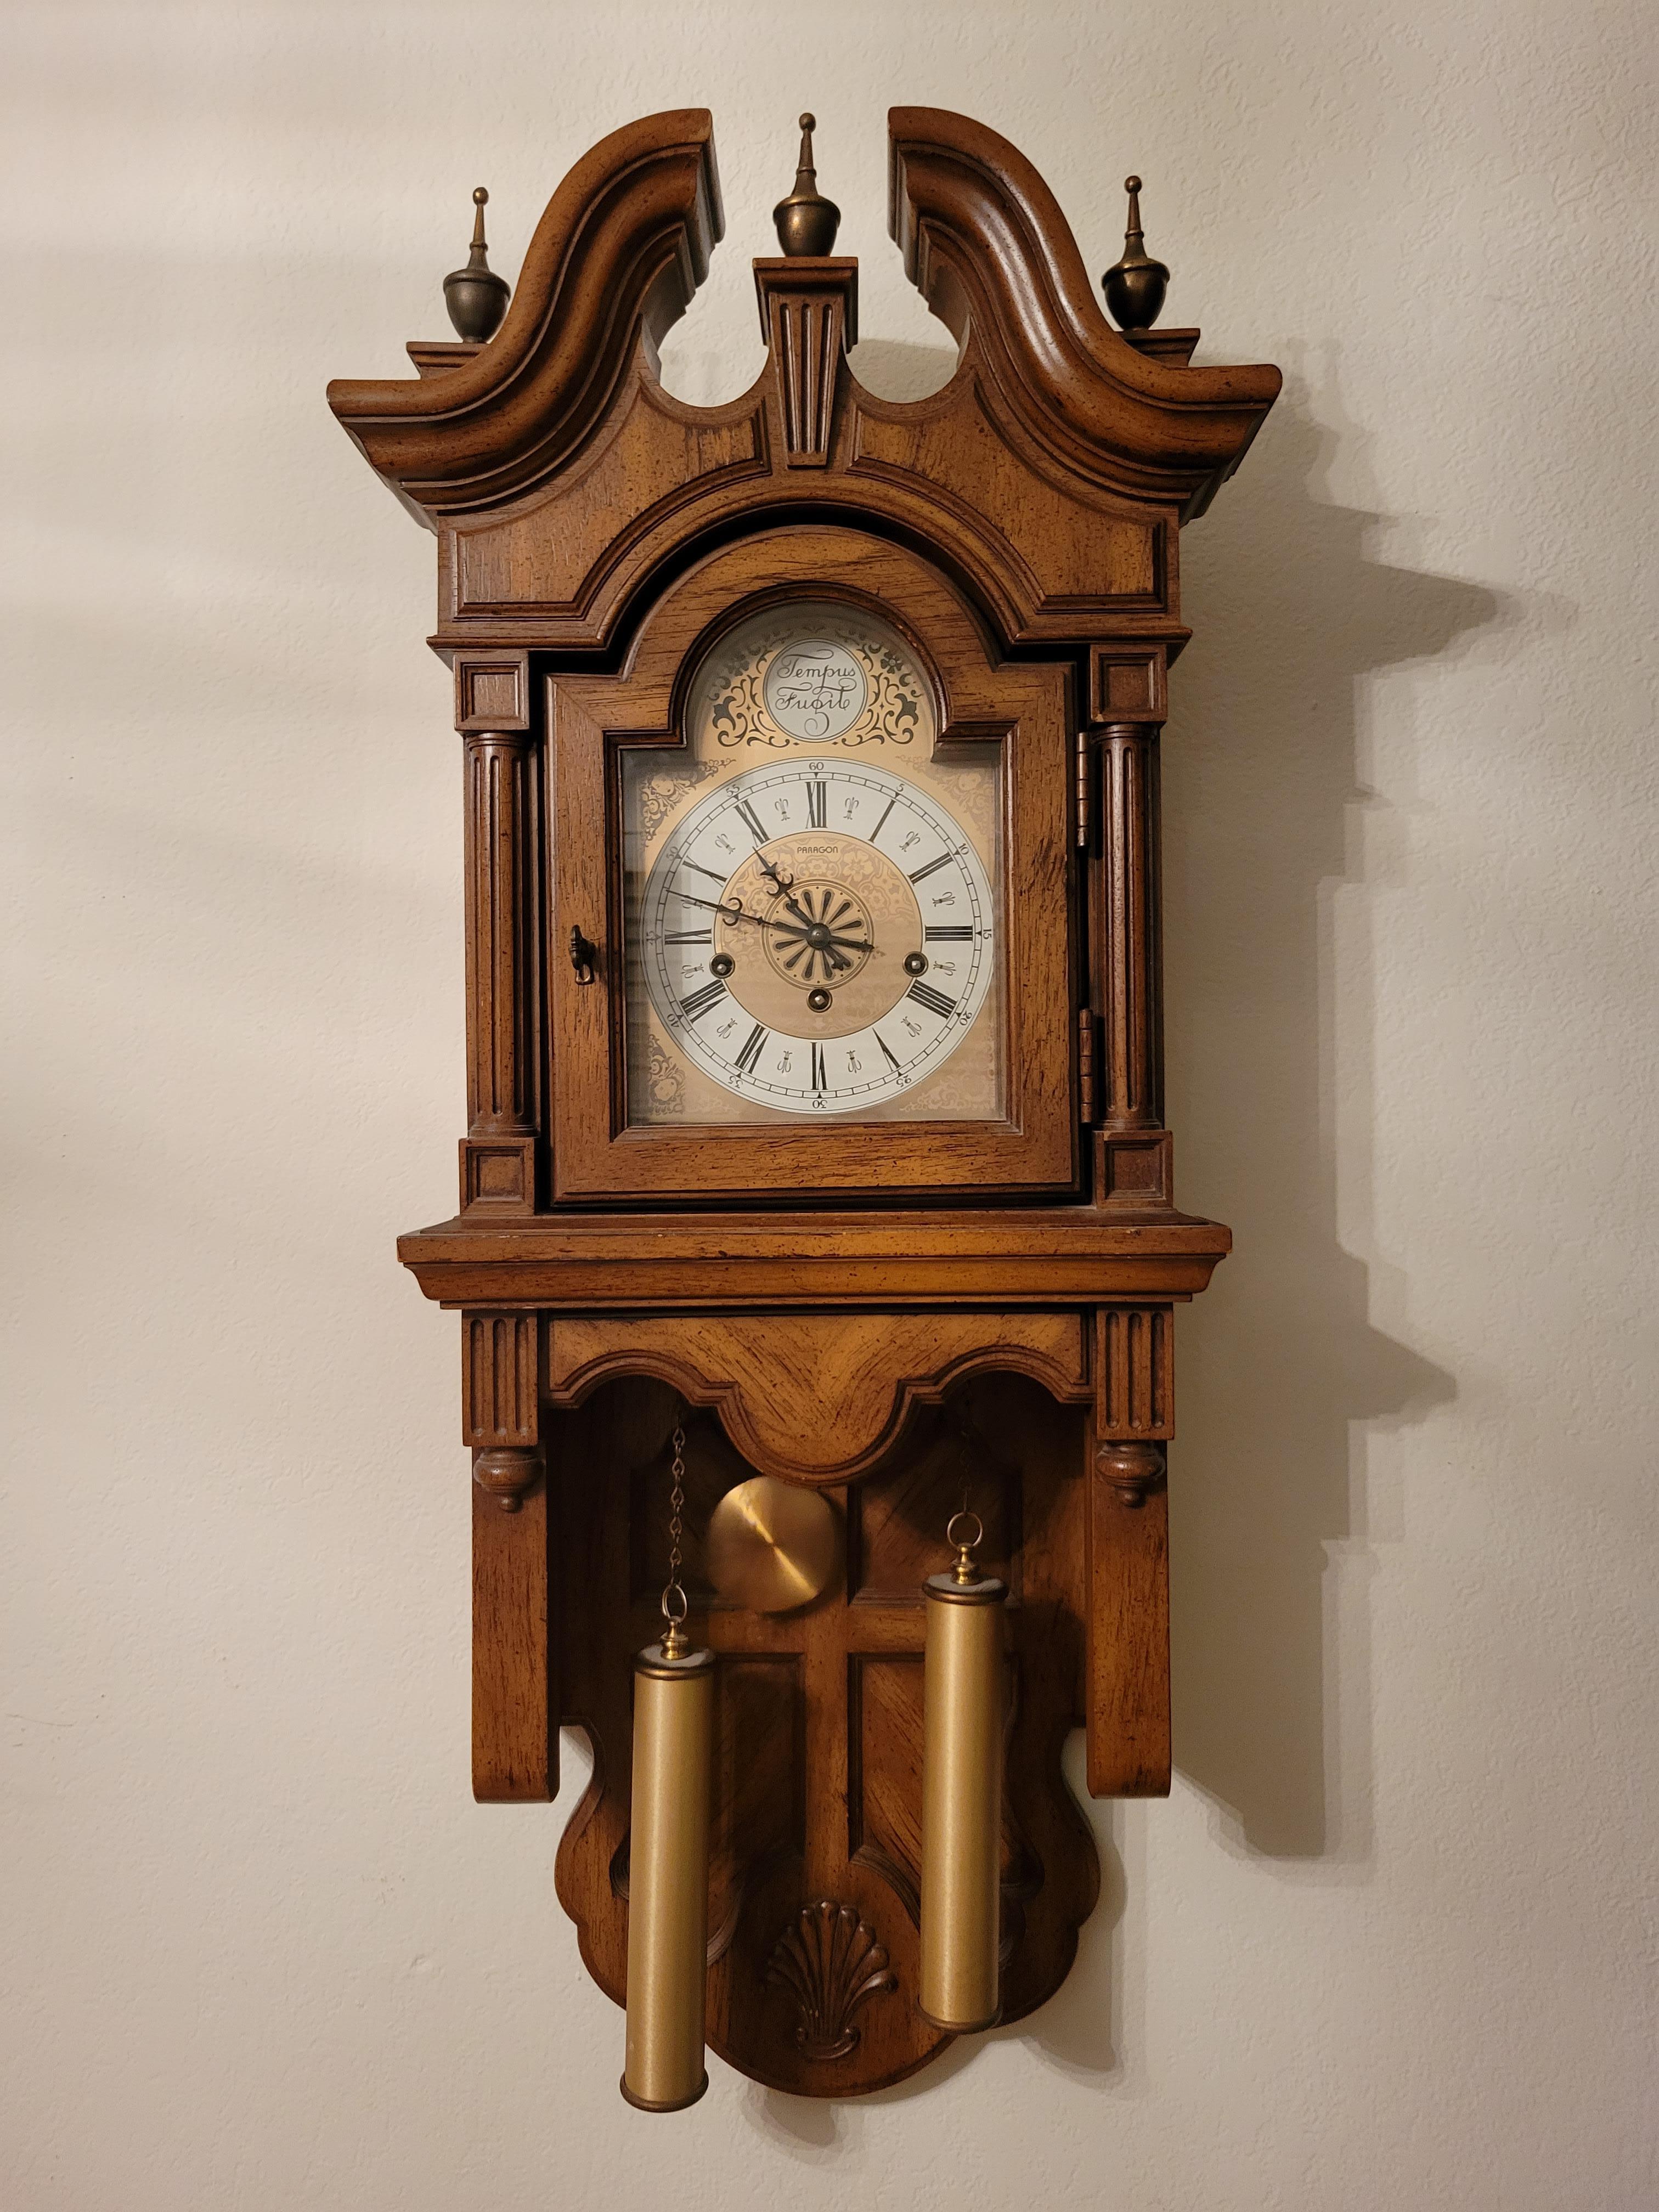 Vintage Paragon Wanduhr mit Franz Hermle Uhrwerk mit schönem Westminster-Glockenspiel. Es läutet 4 Töne bei 15 Minuten, 8 Töne bei 30 Minuten, 12 Töne bei 45 Minuten und 16 Töne bei der vollen Stunde.  Die Bewegung schließt mit einer Taste ab. Die